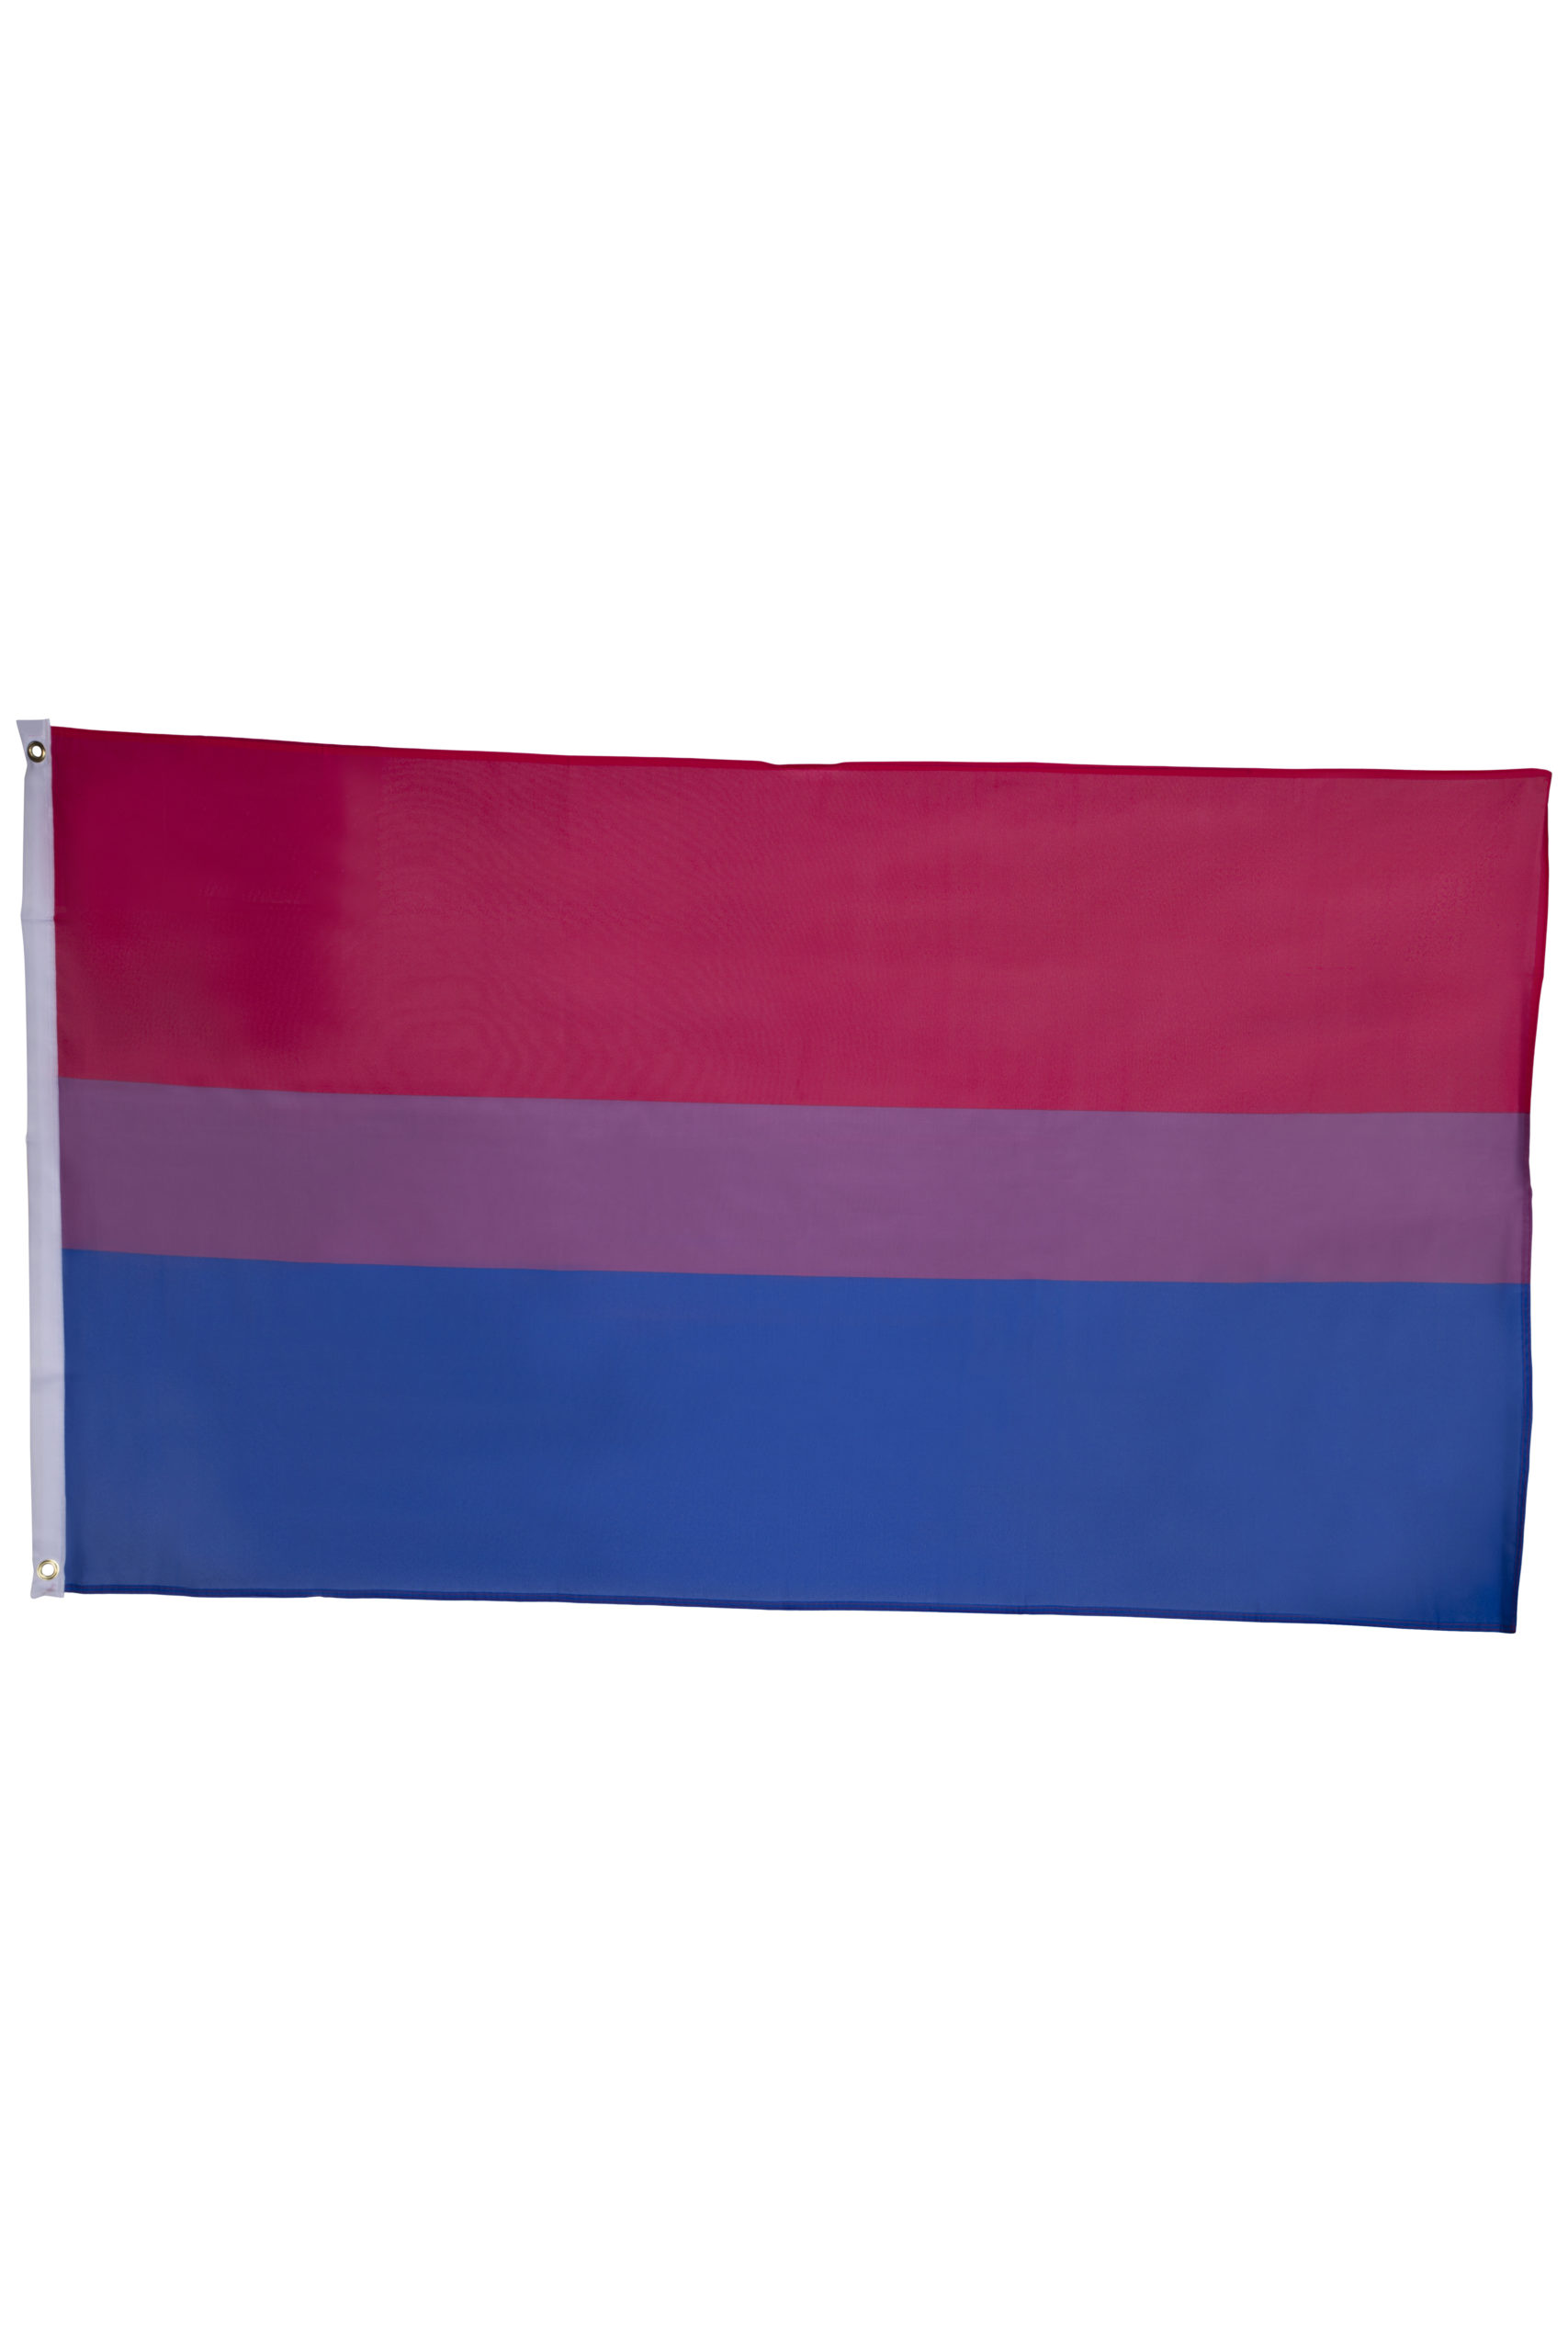 Bisexual Pride Flag Large 150 X 90 Cm Copenhagen Pride 